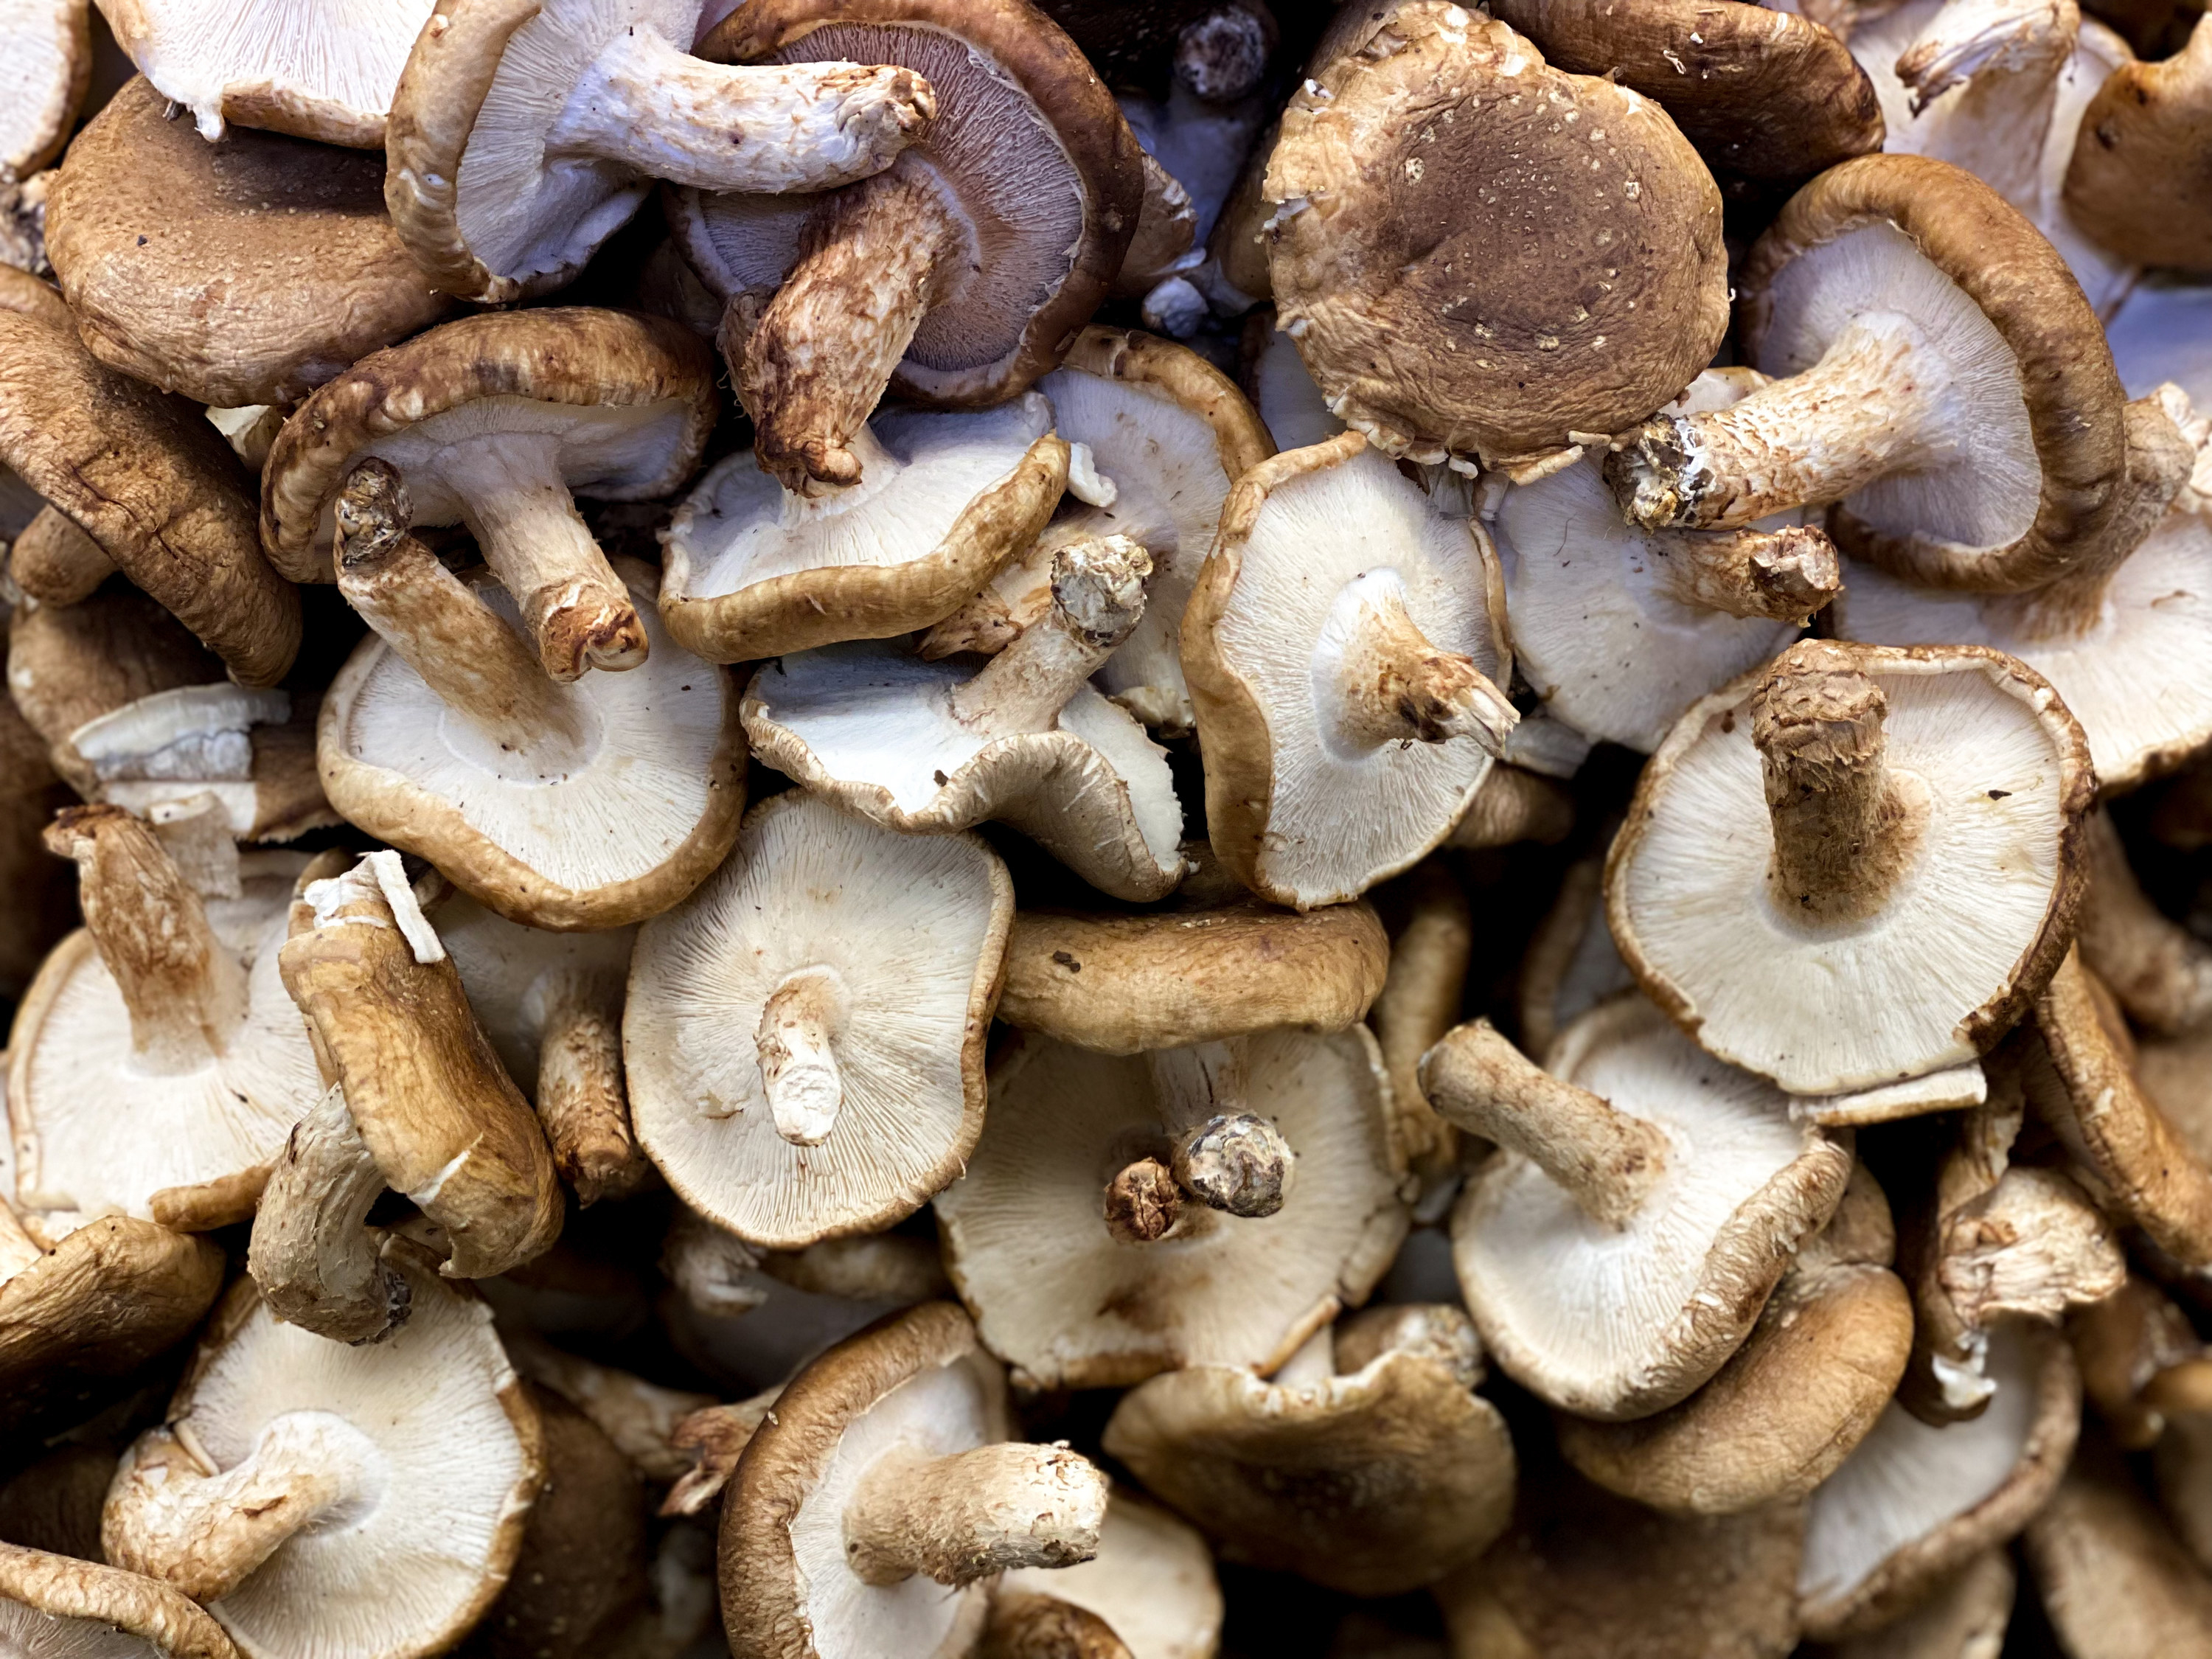 a tray of mushrooms